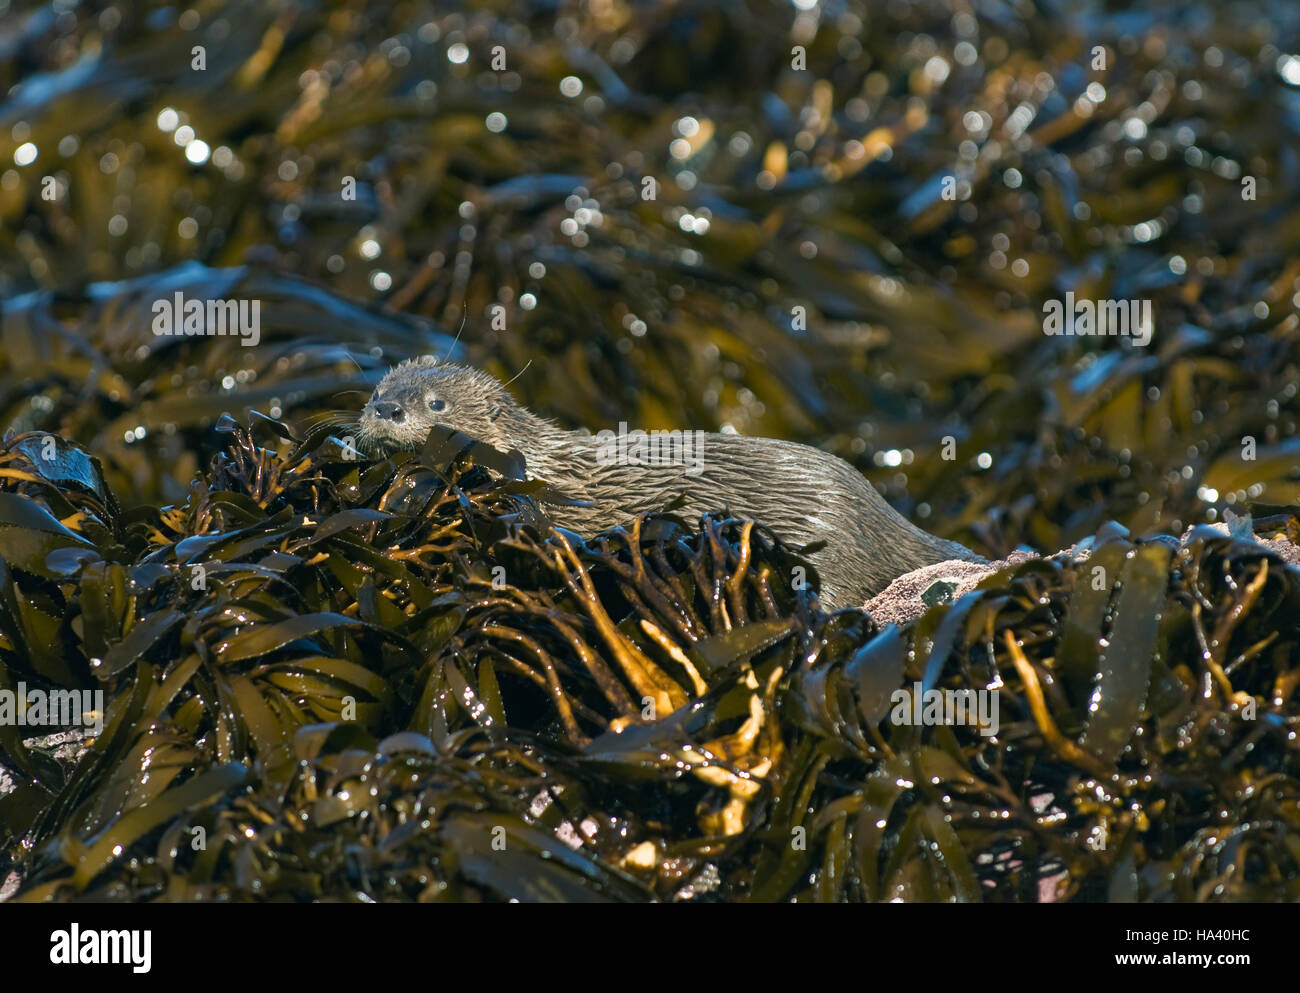 Caza en algas Nutria marina (Lontra felina) En Peligro de Extinción, Isla de Chiloé, Chile : pequeño mamífero marino en la tierra Foto de stock